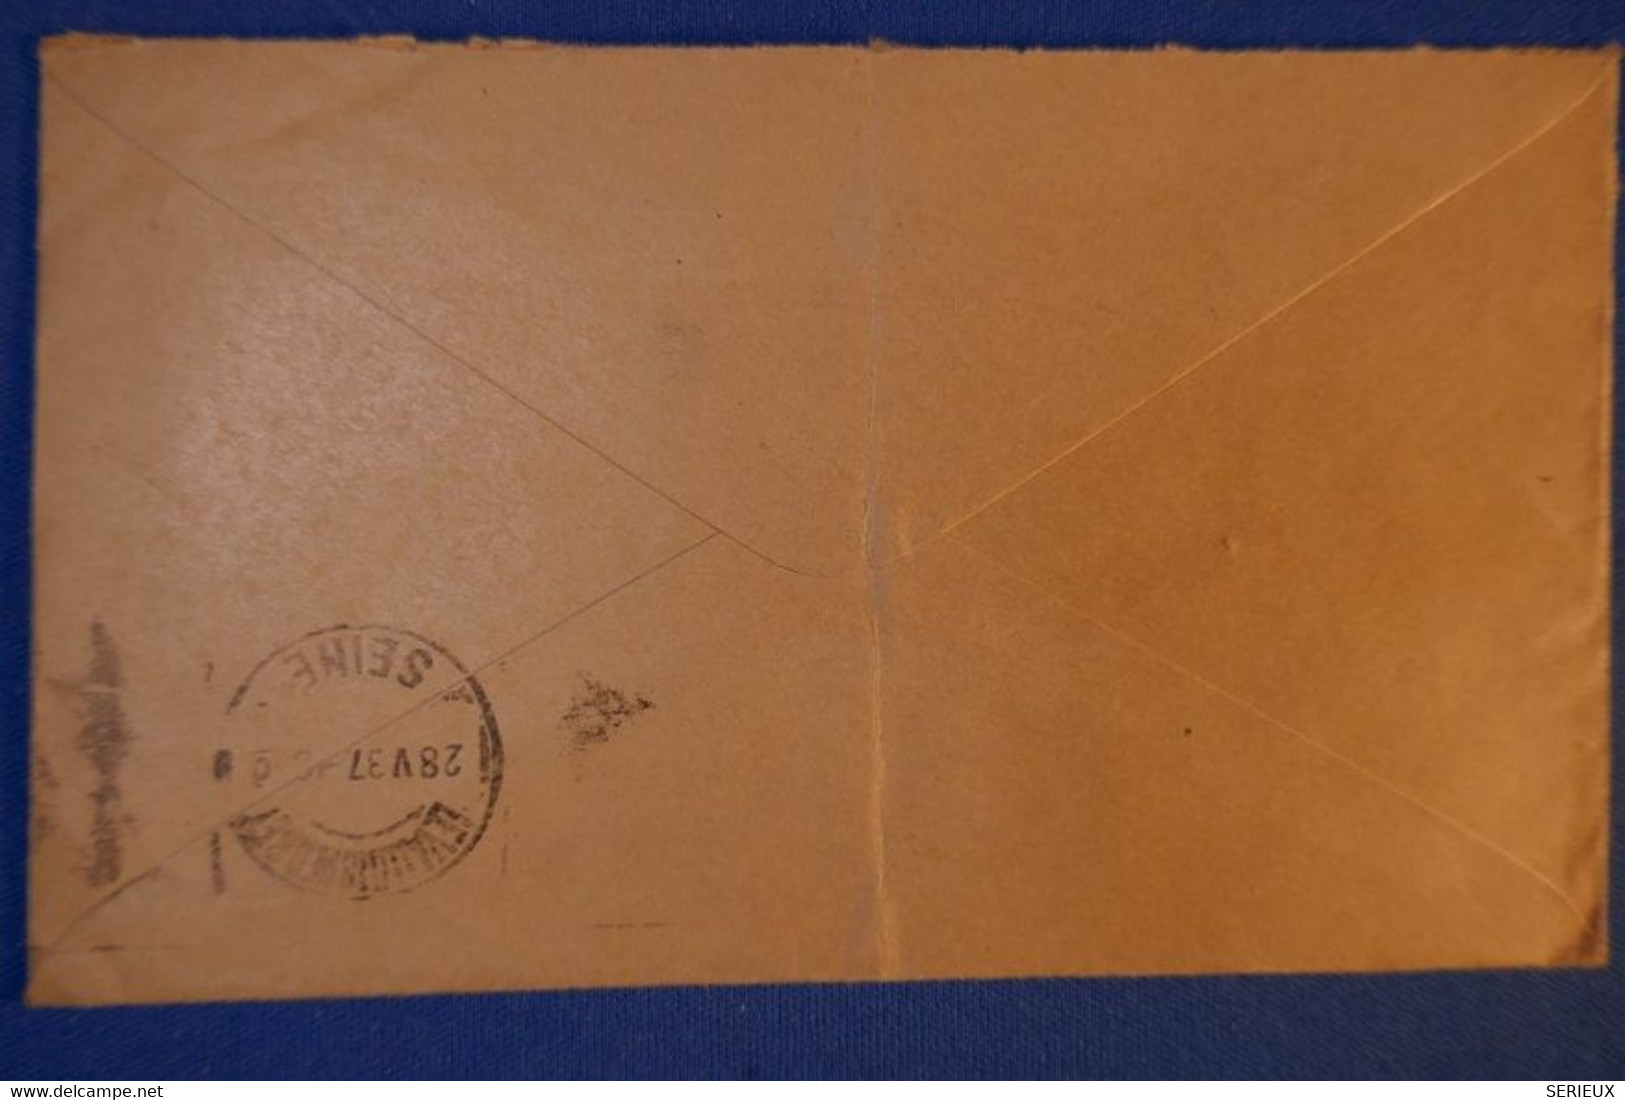 260 GRANDE BRETAGNE BELLE LETTRE 1937 SWANSEA A LEVALLOIS - Covers & Documents